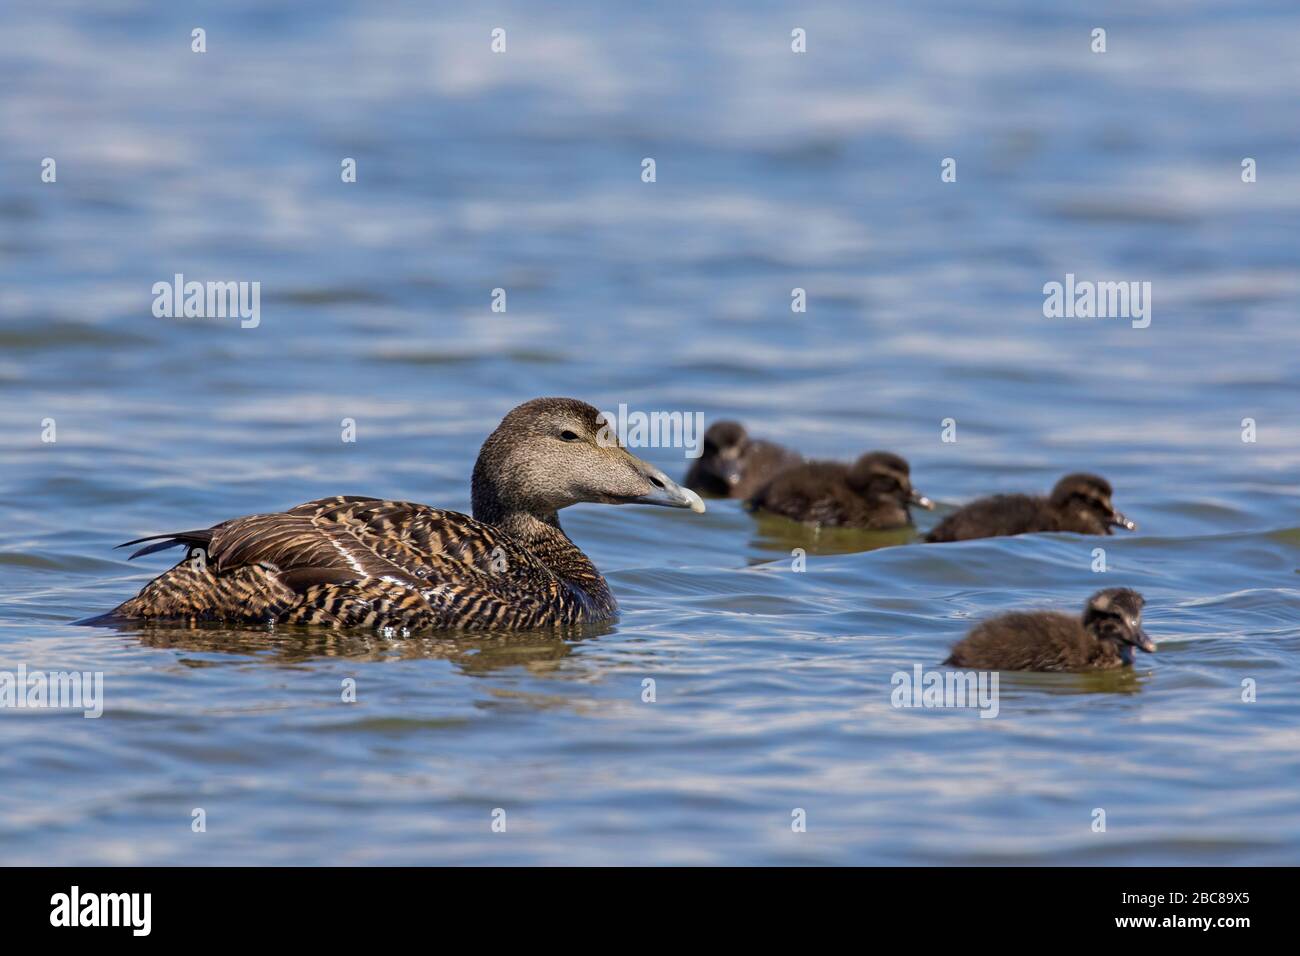 Common eider duck (Somateria mollissima) female with chicks swimming in sea Stock Photo